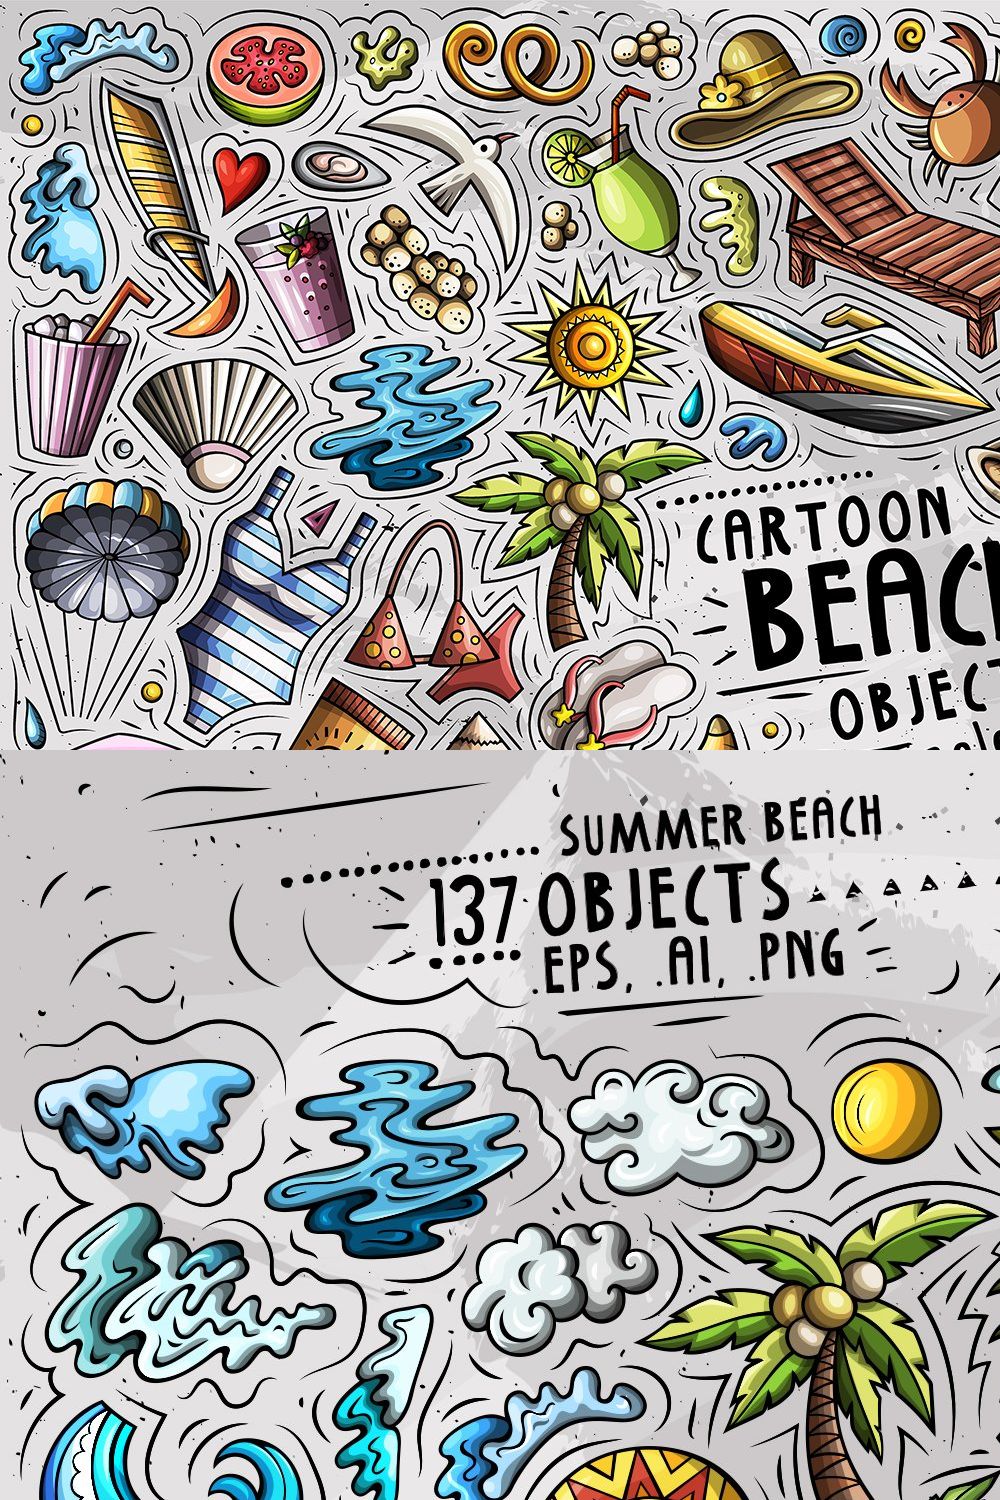 Summer Beach Cartoon Objects Set pinterest preview image.